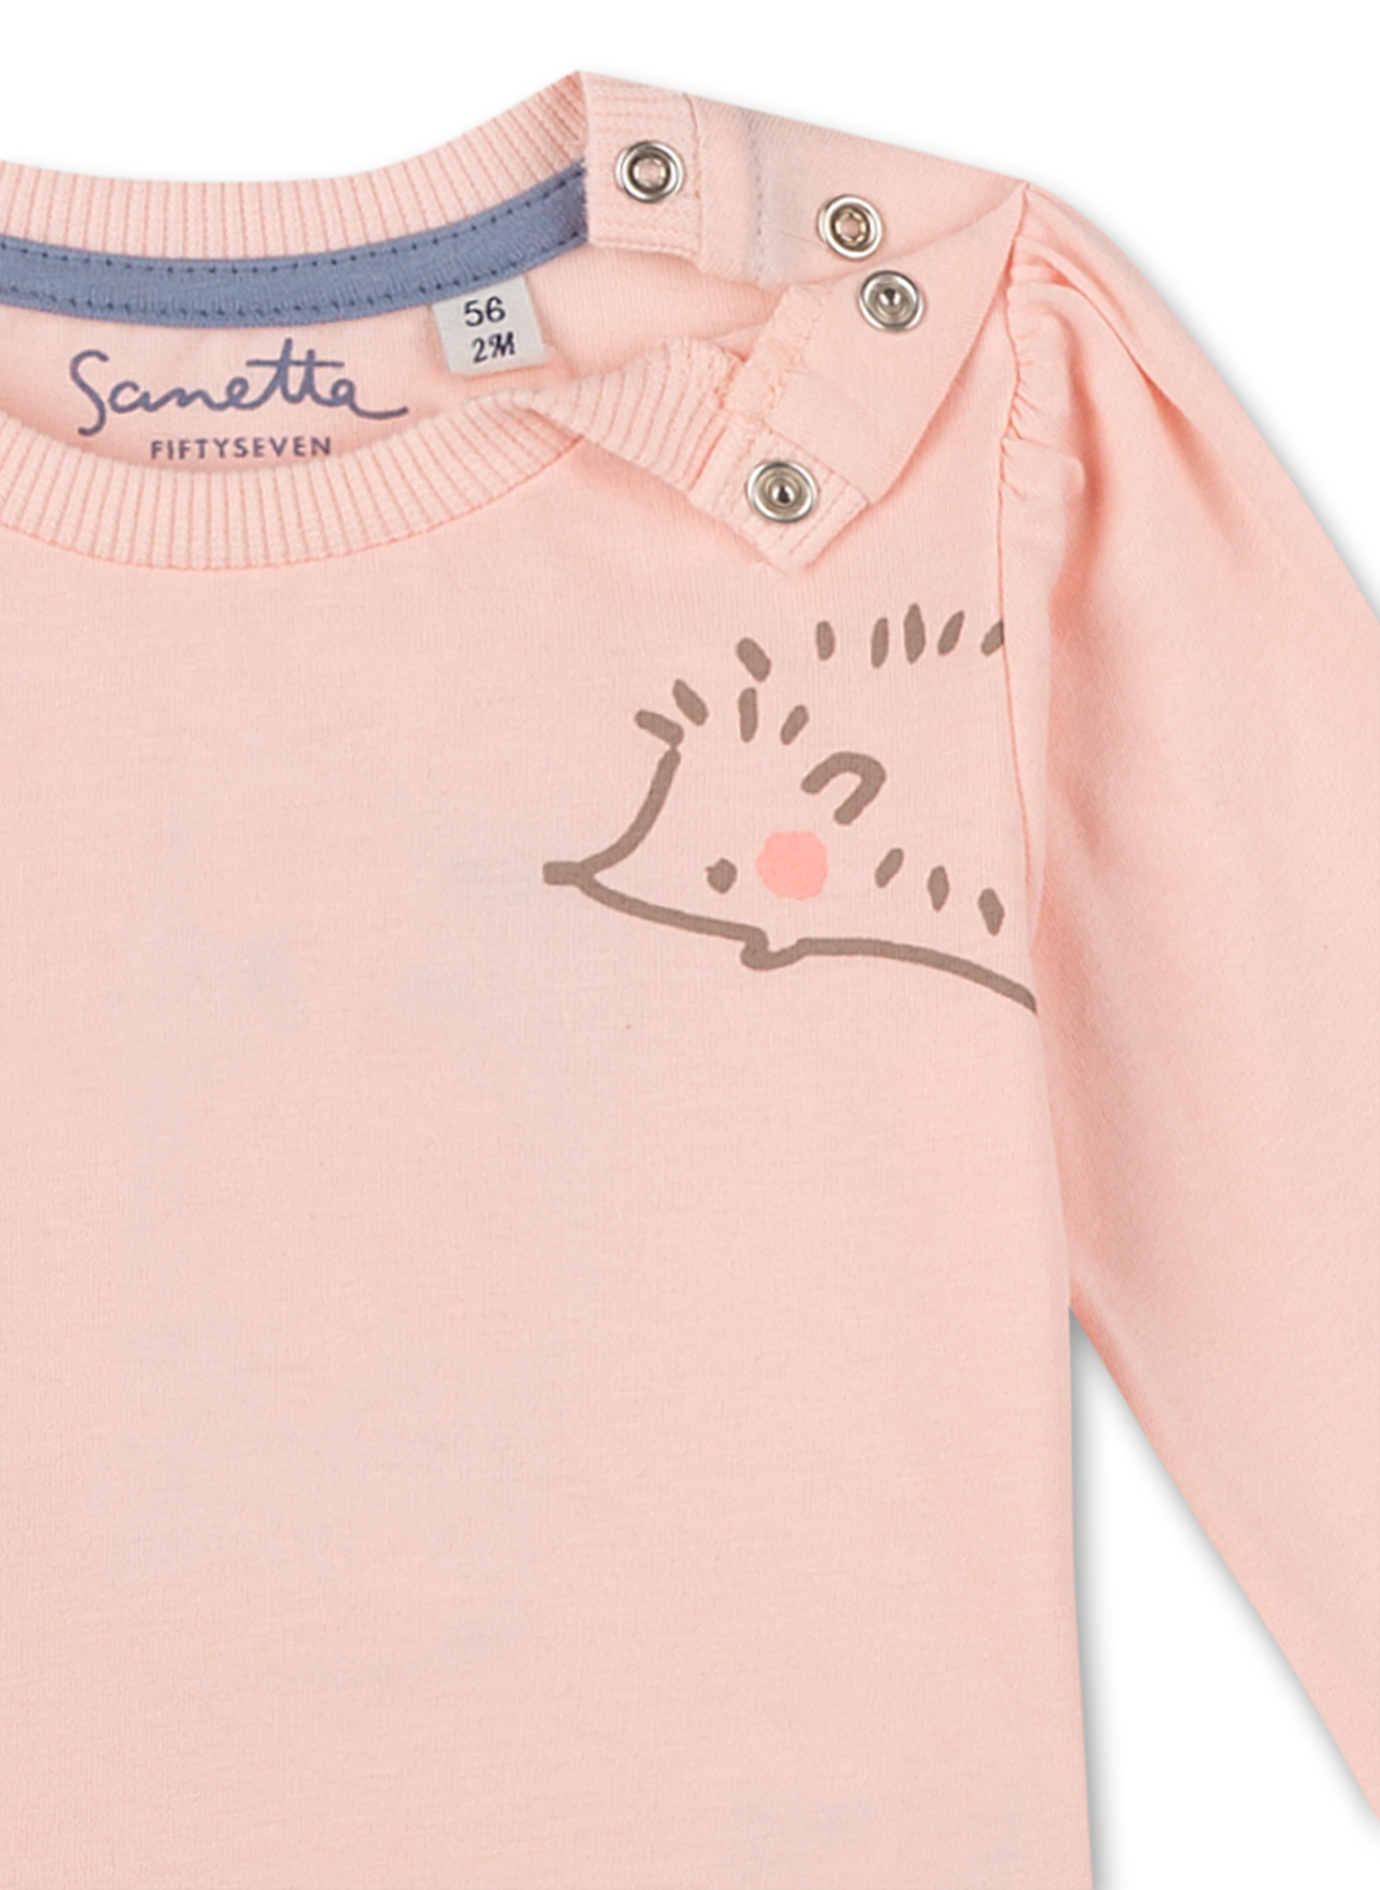 Mädchen-Shirt langarm Rosa Little Spikes